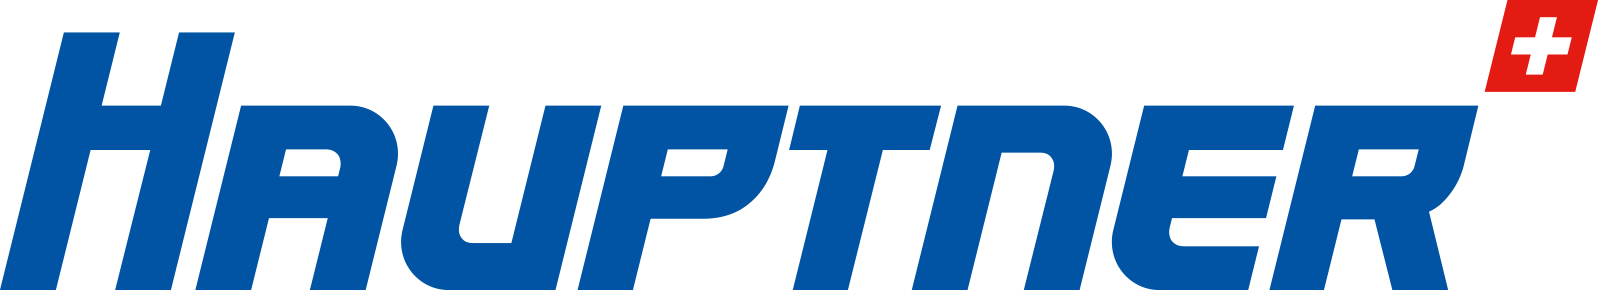 Hauptner-Logo.png